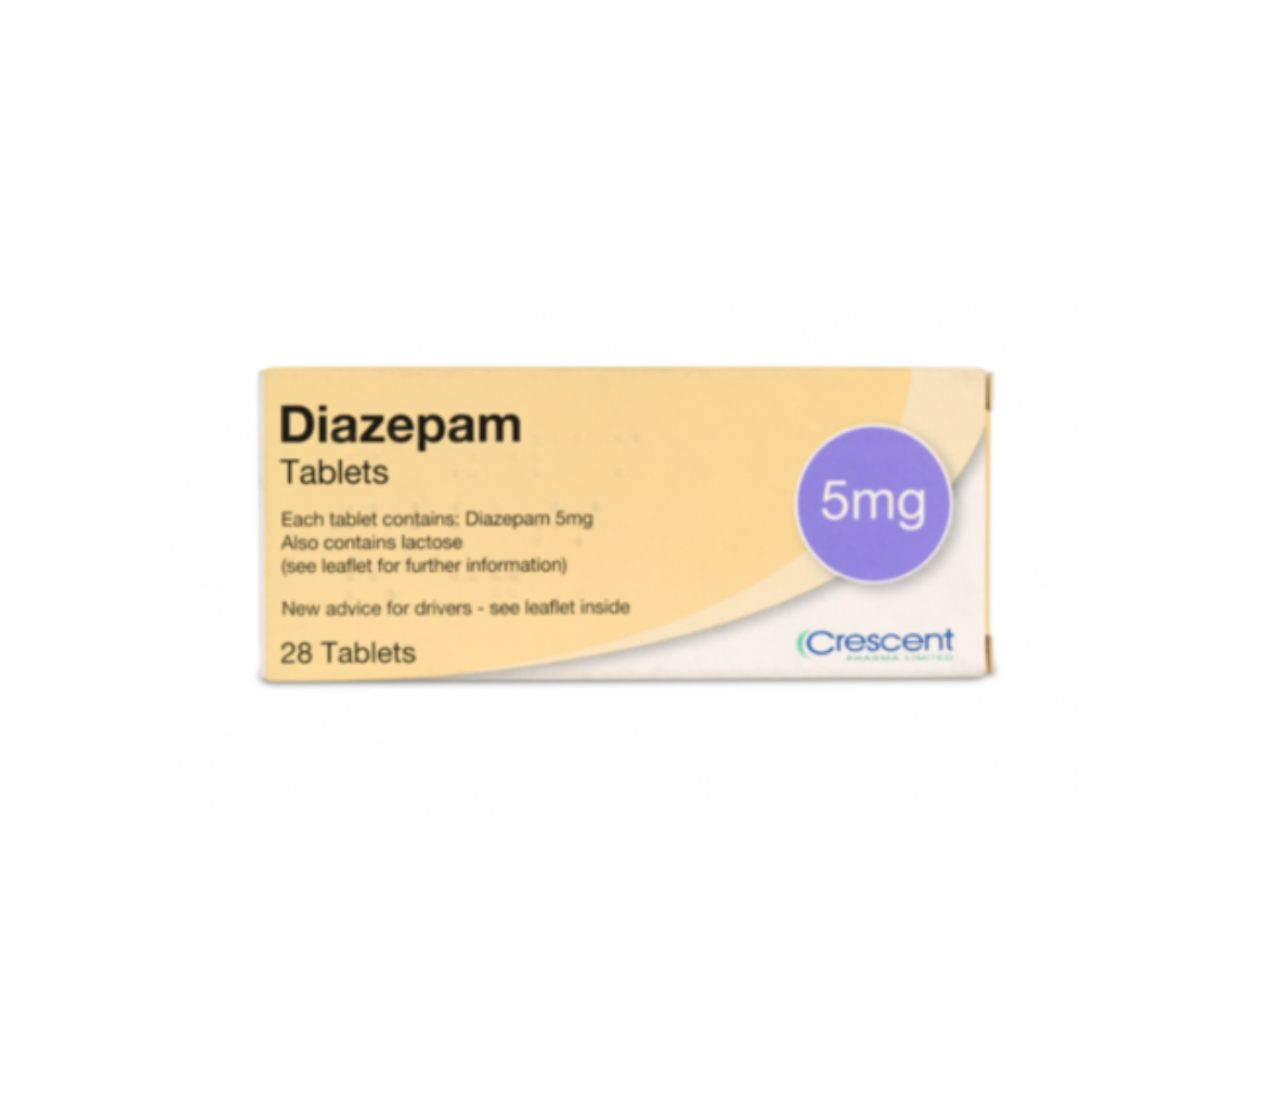  Diazepam kopen zonder recept met iDeal.  Medicijnen online betrouwbaar zonder bitcoins bestellen bij apotheek met goede ervaringen - Nederland en België 